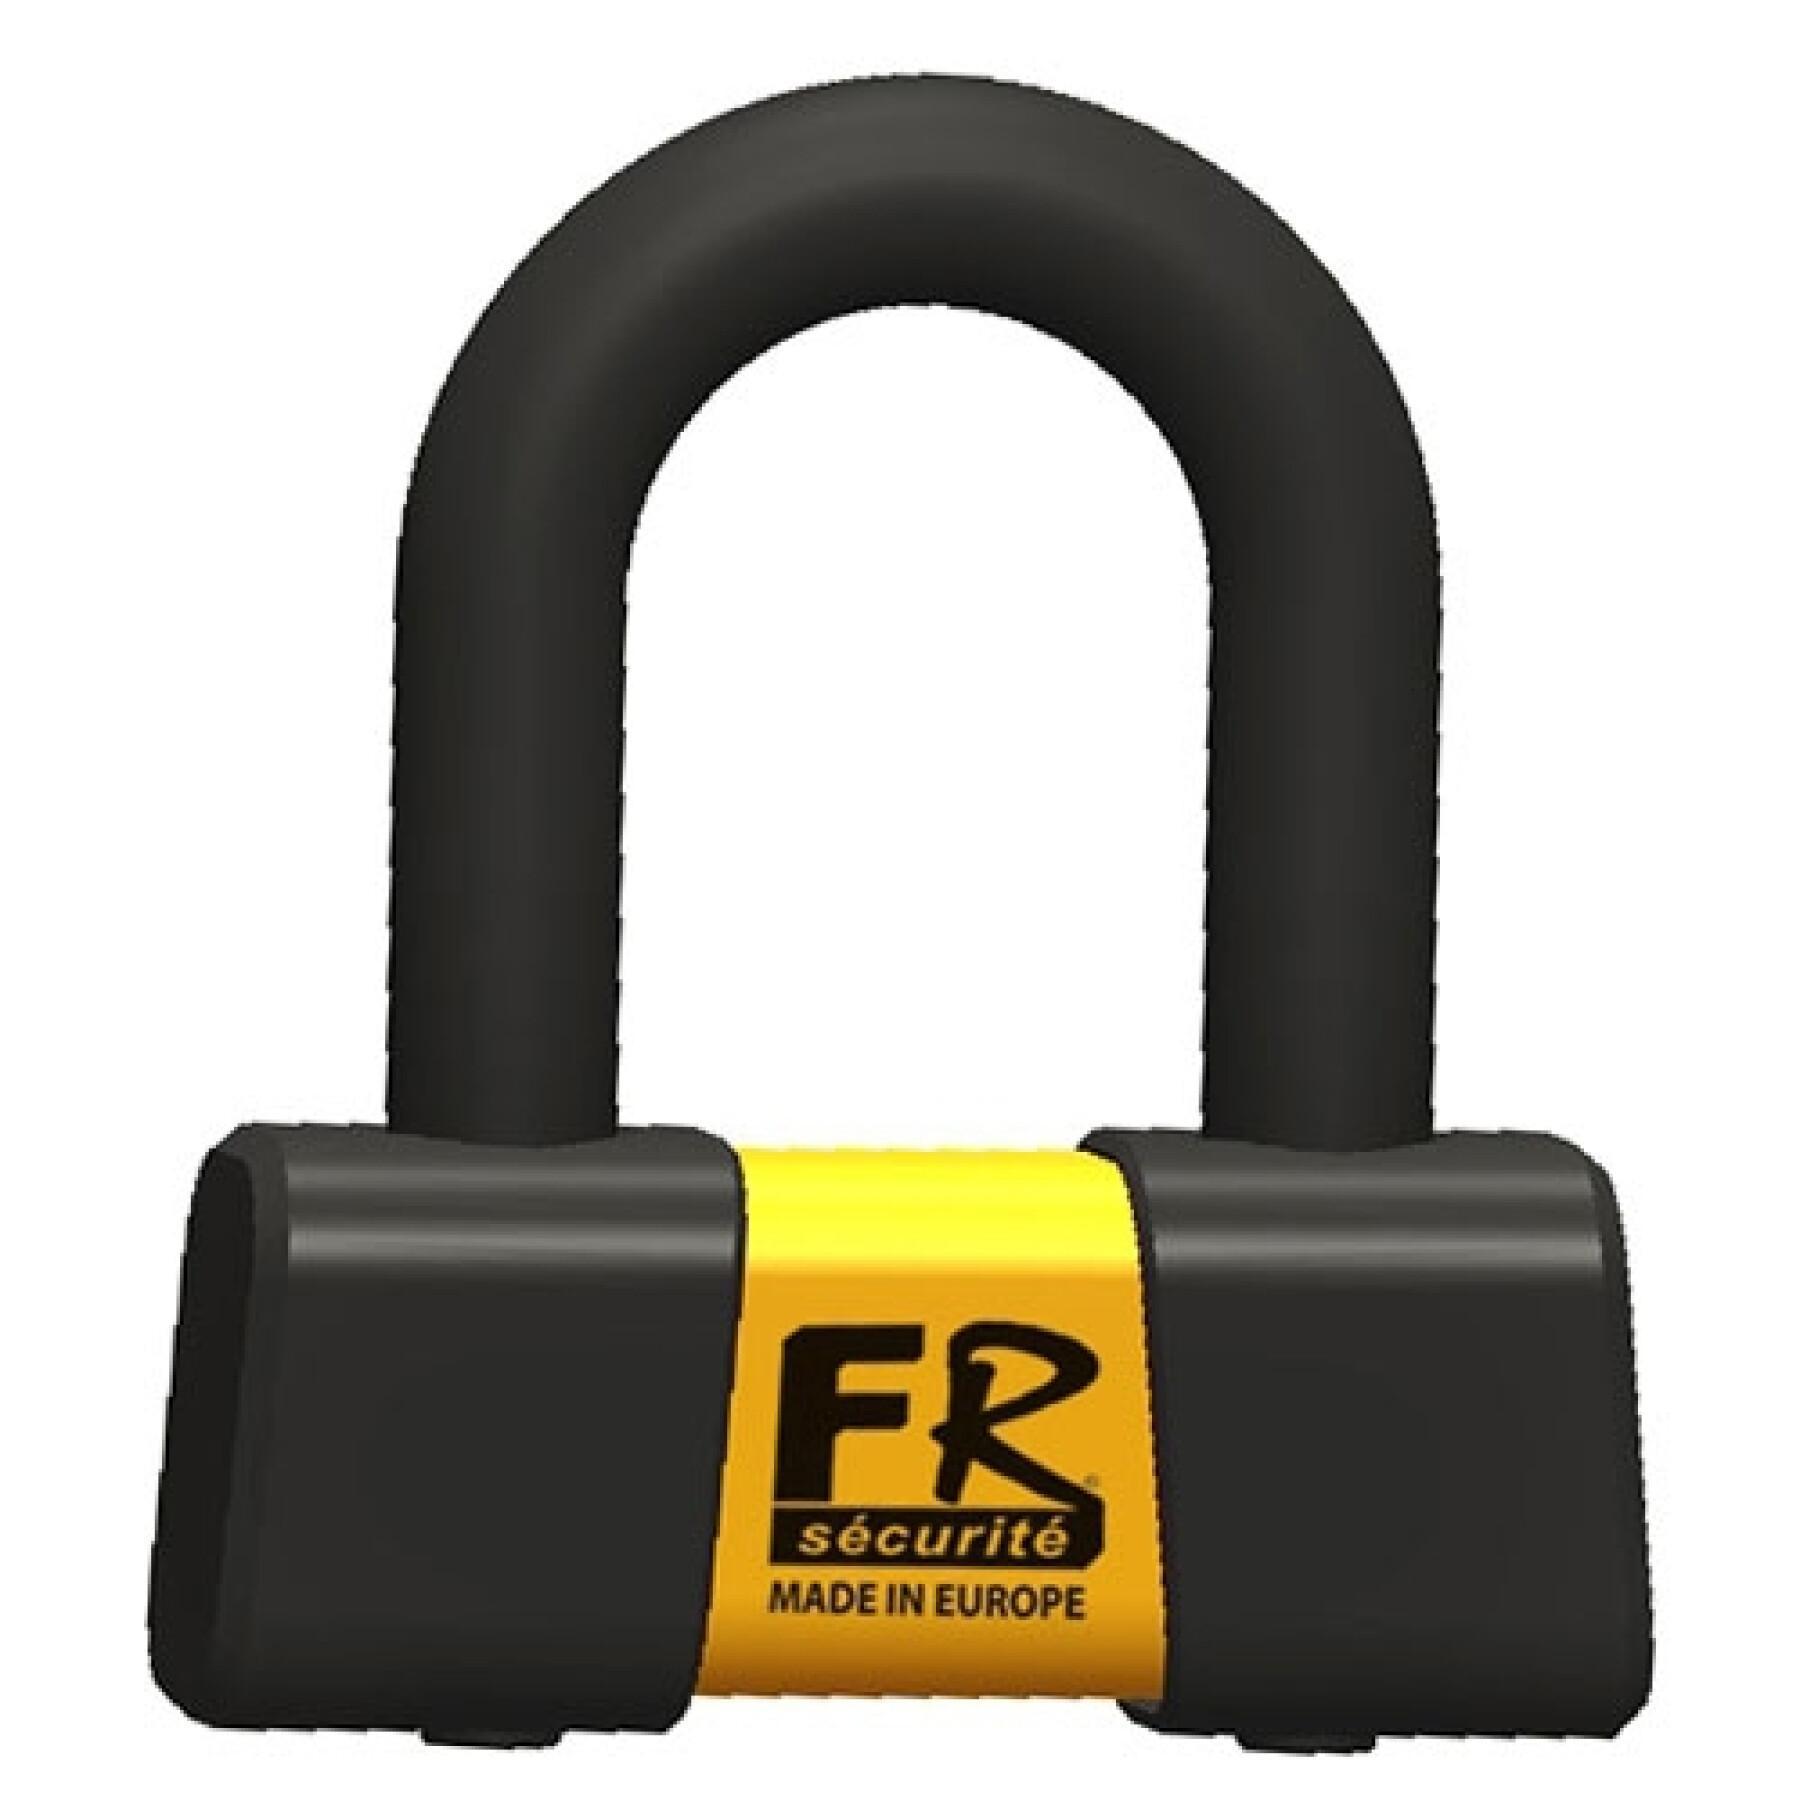 sra approved mini u anti-theft device FR Securite